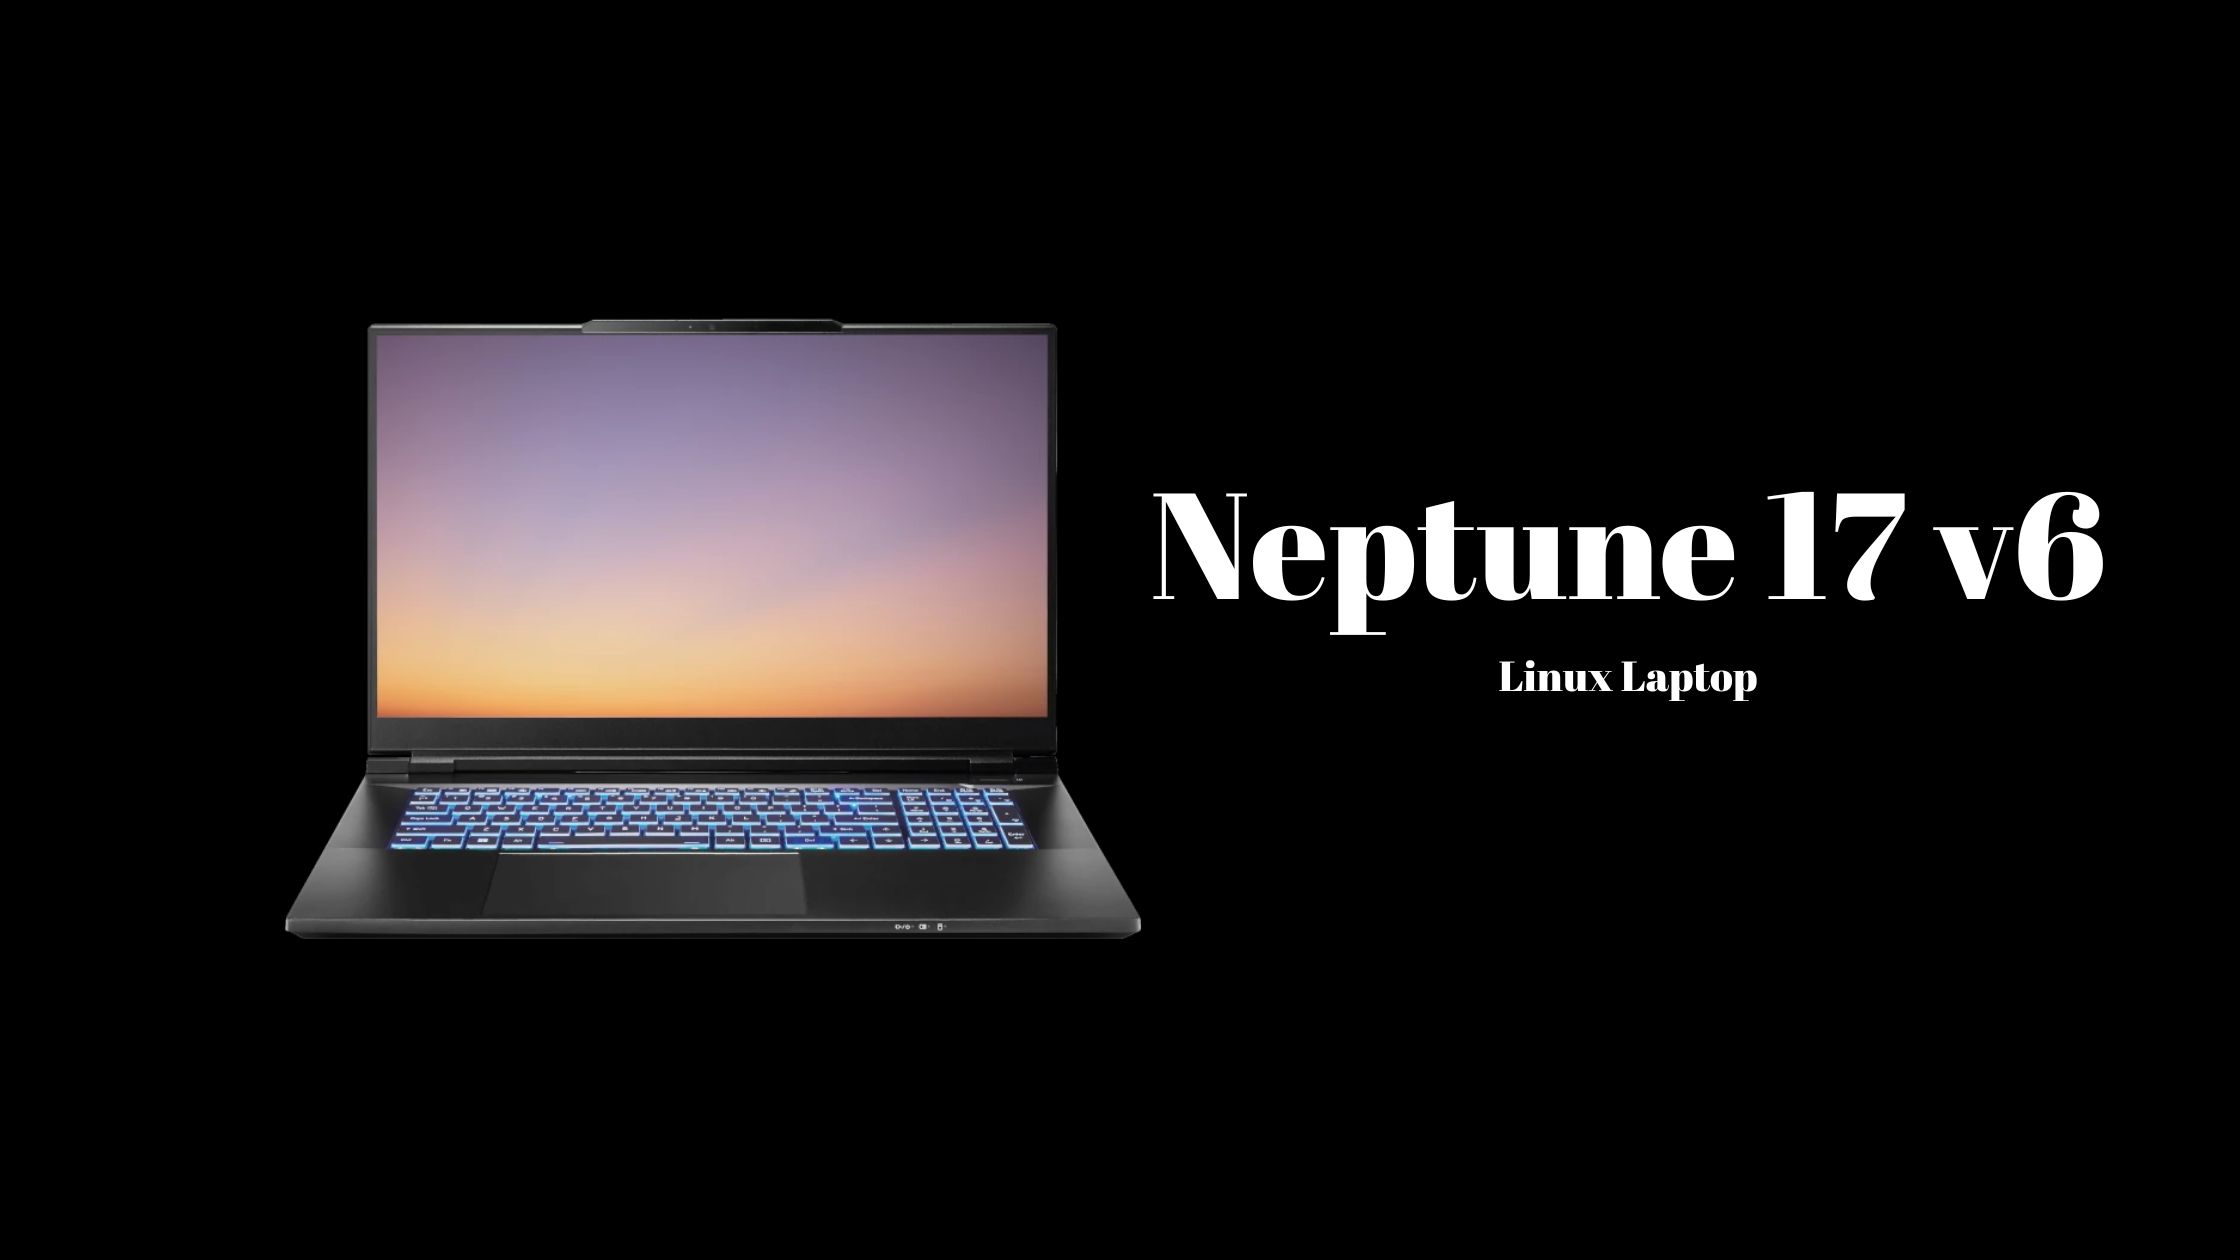 Neptune 17 v6 Linux Laptop